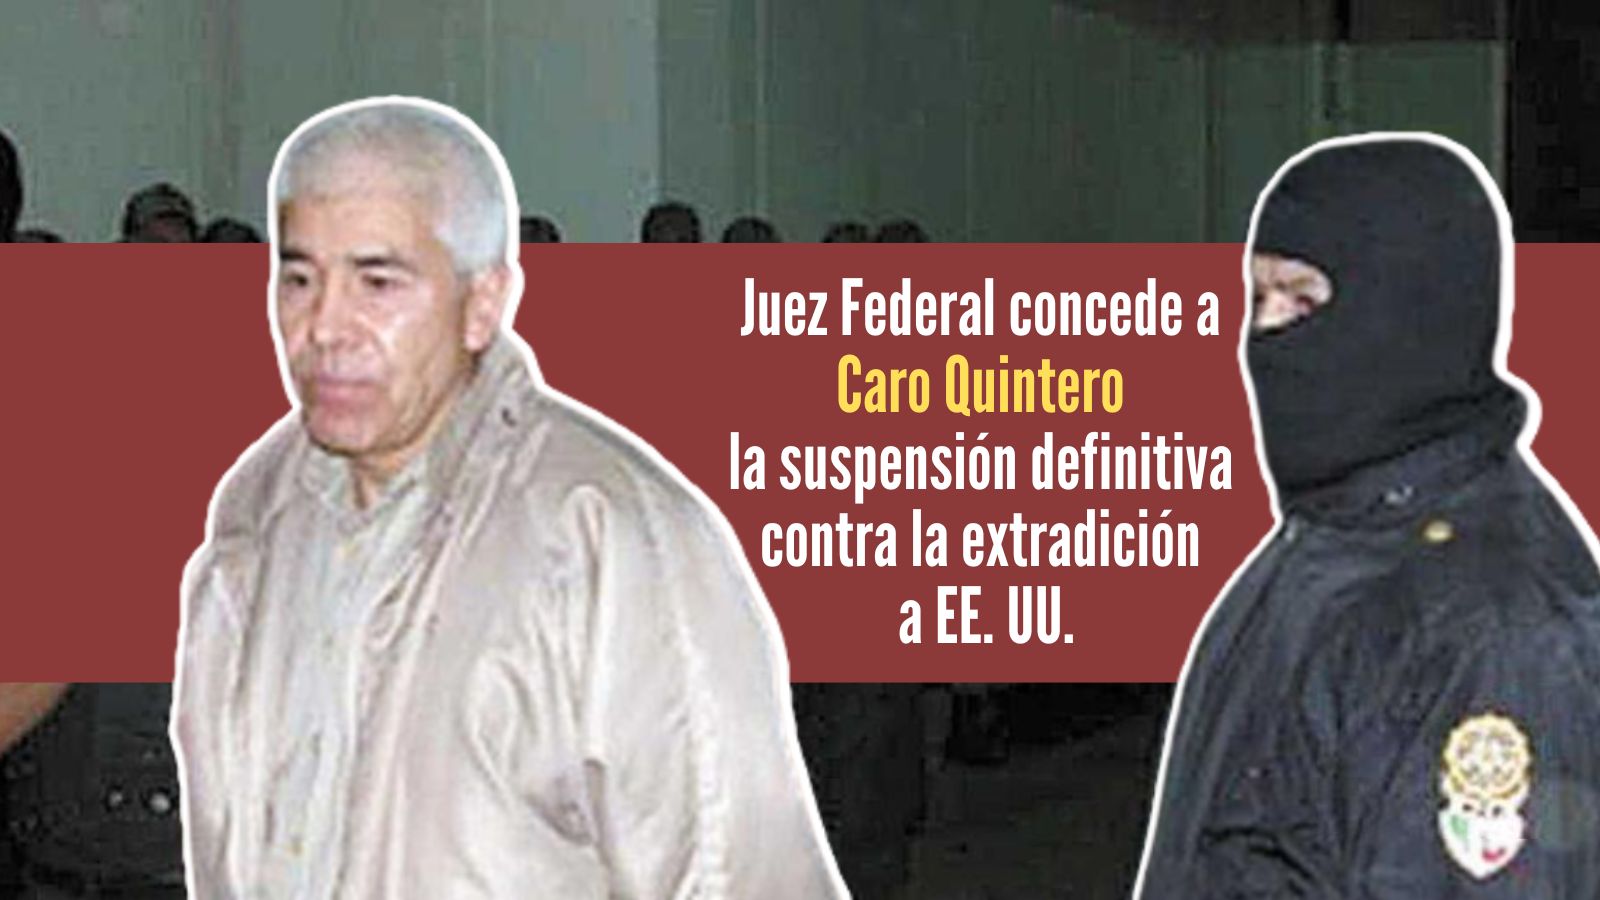 Juez otorga suspensión a la orden de extradición de Rafael Caro Quintero